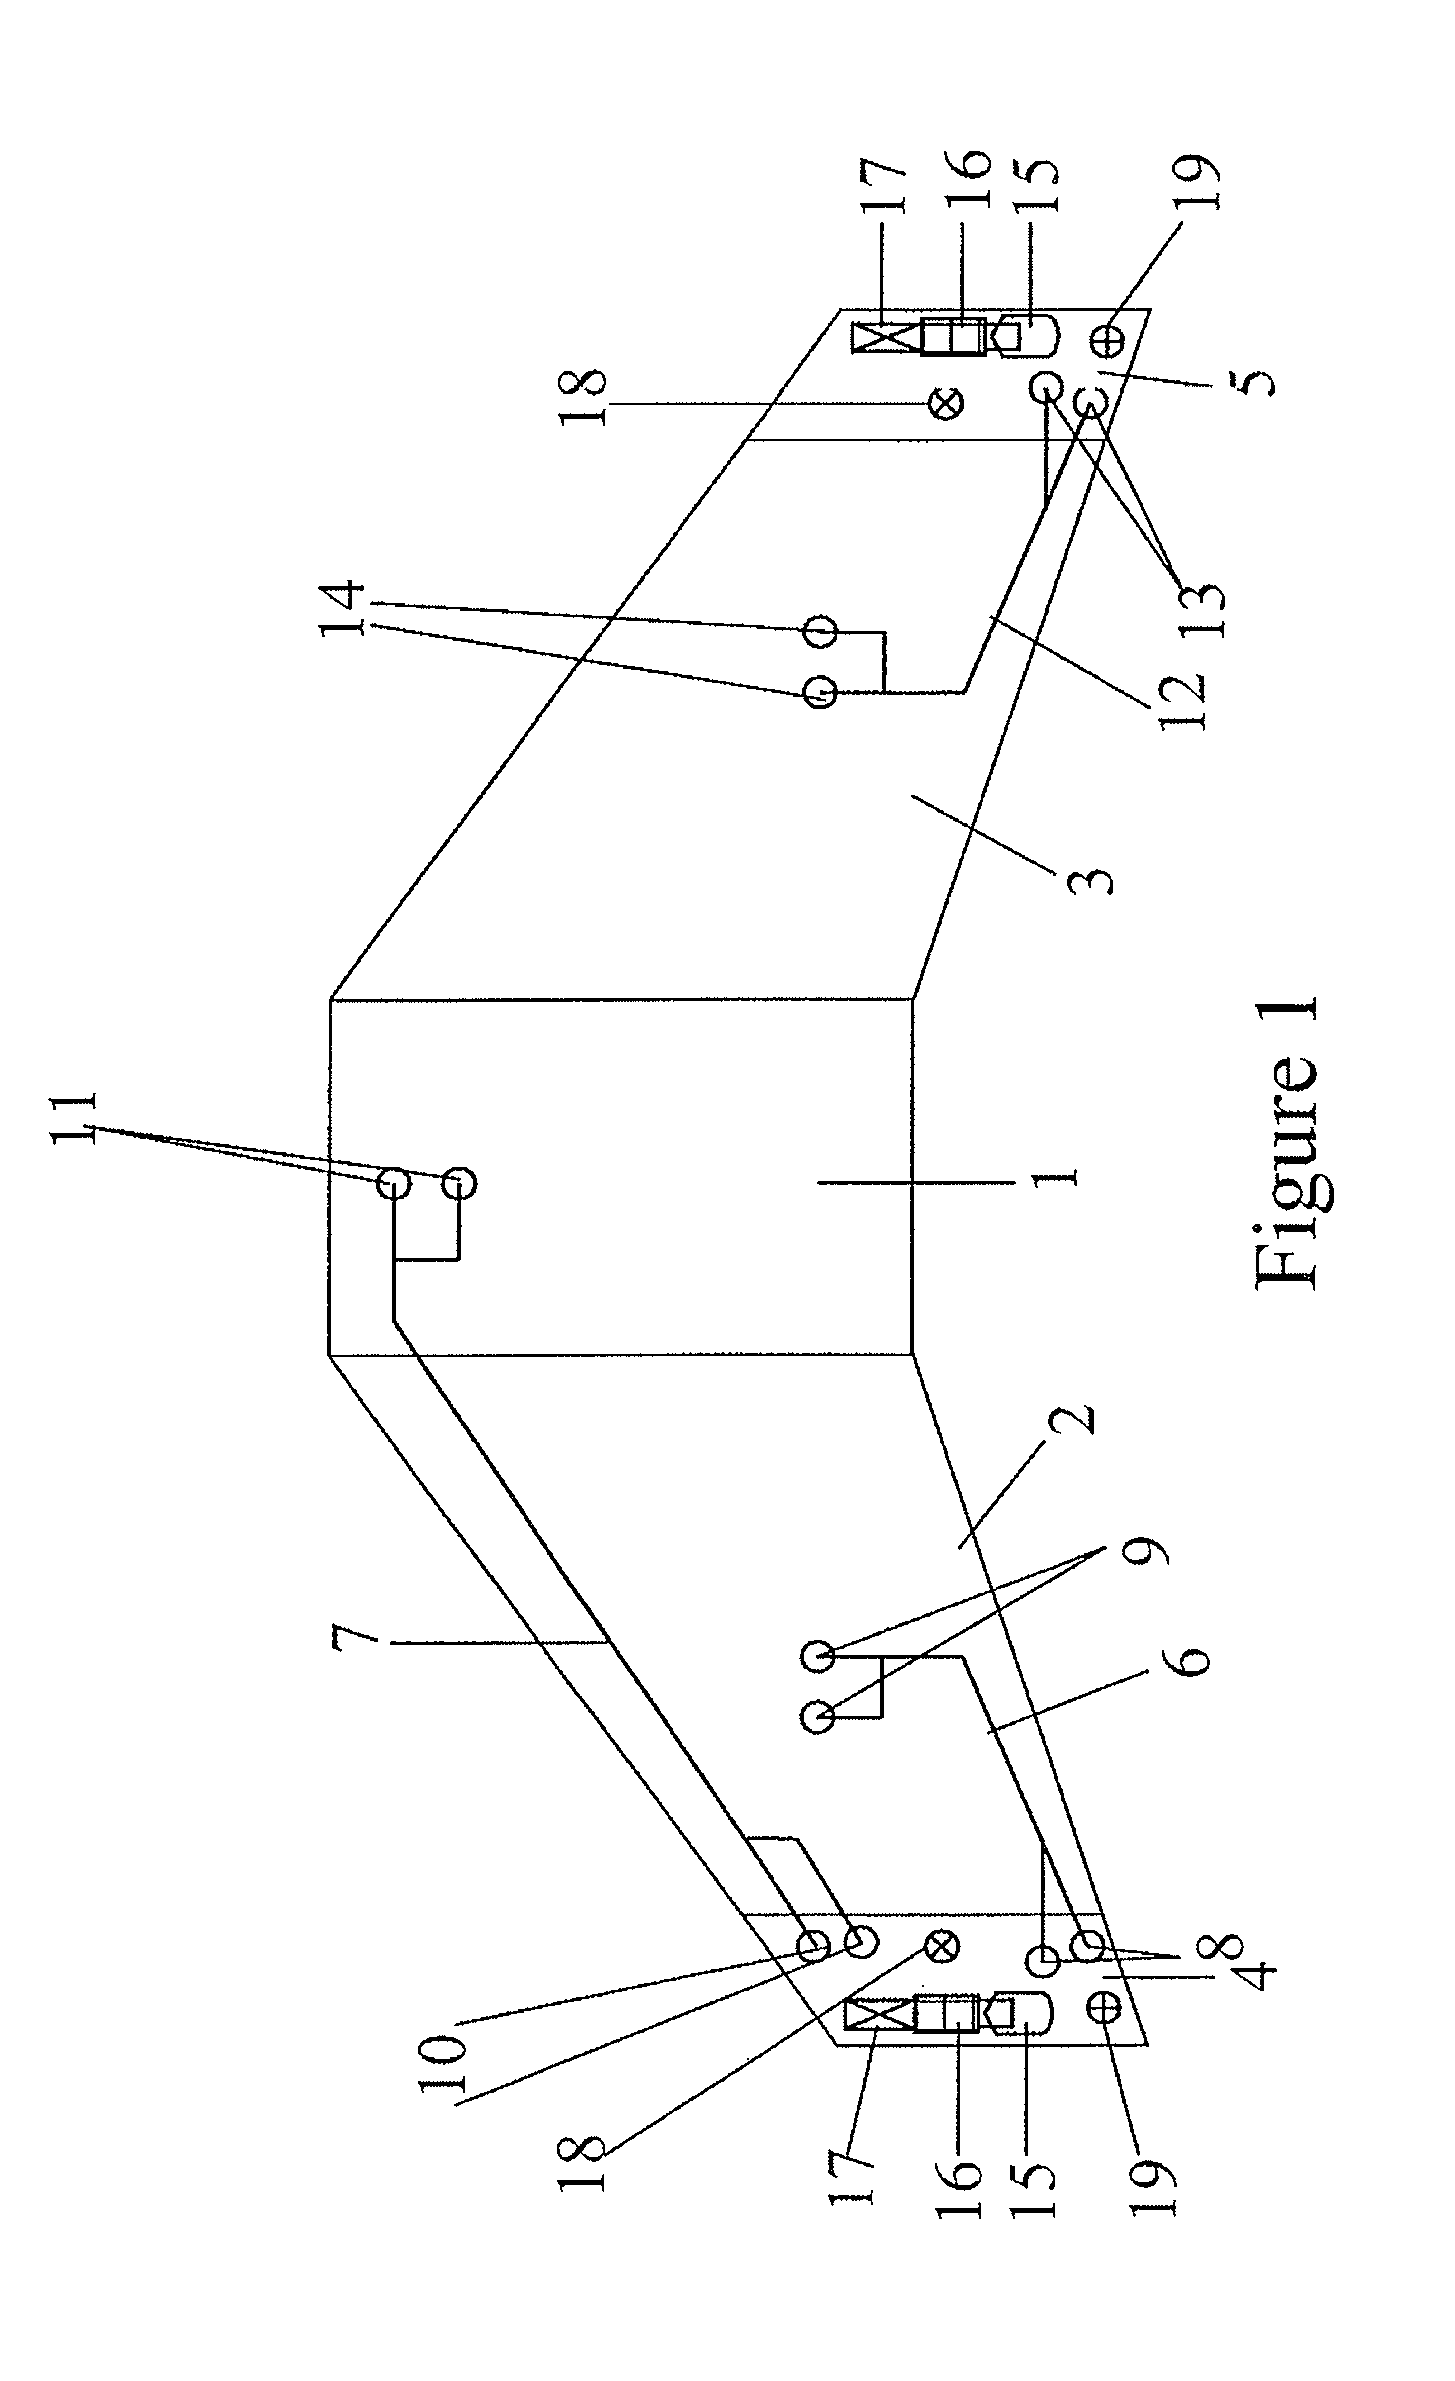 Aircraft fuel tank ventilation